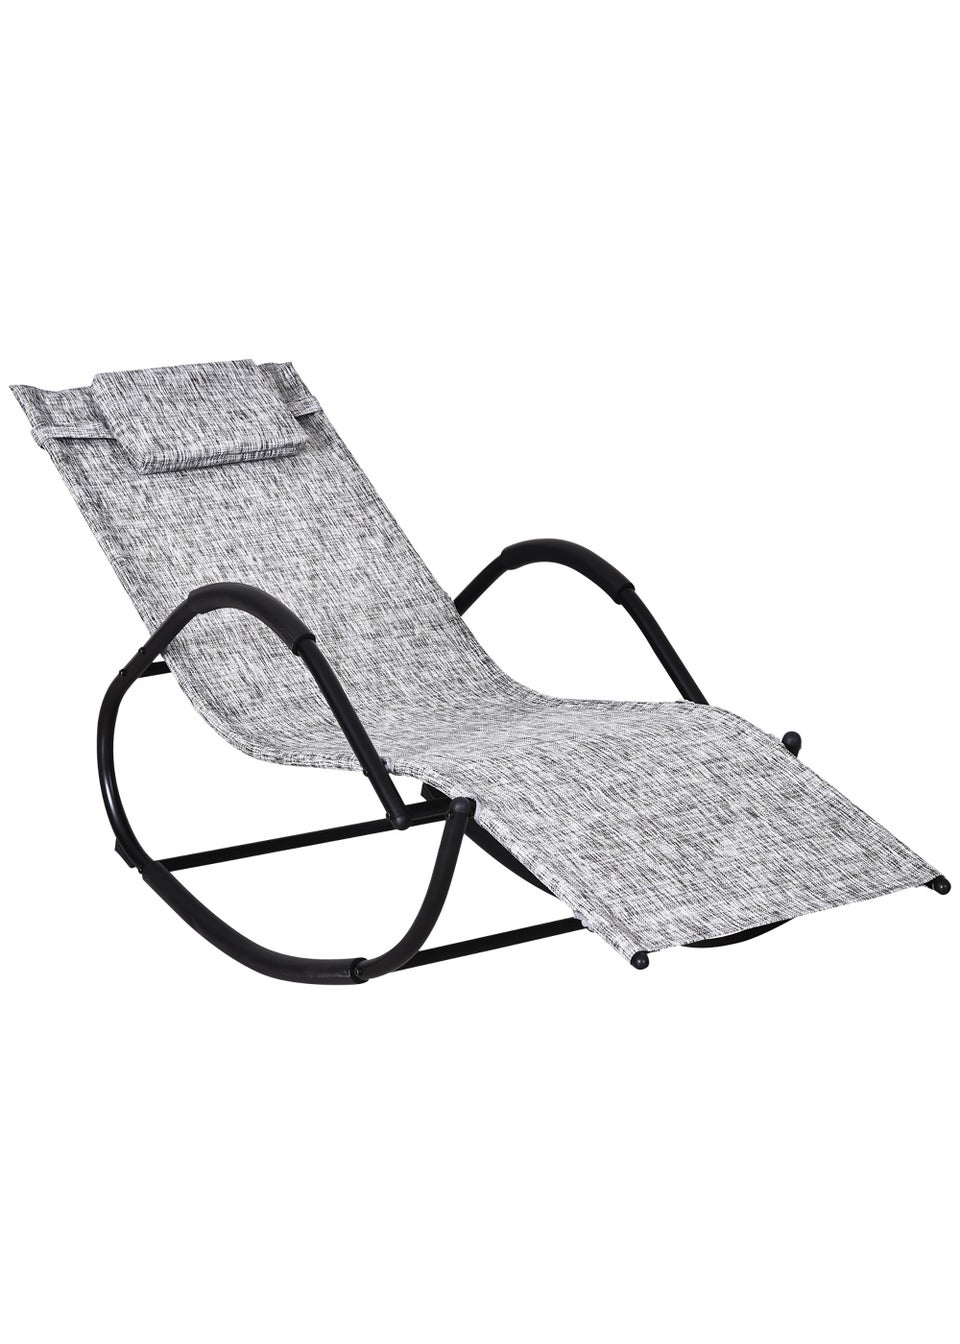 Outsunny Zero Gravity Rocking Lounge Chair (160cm x 61cm x 79cm)